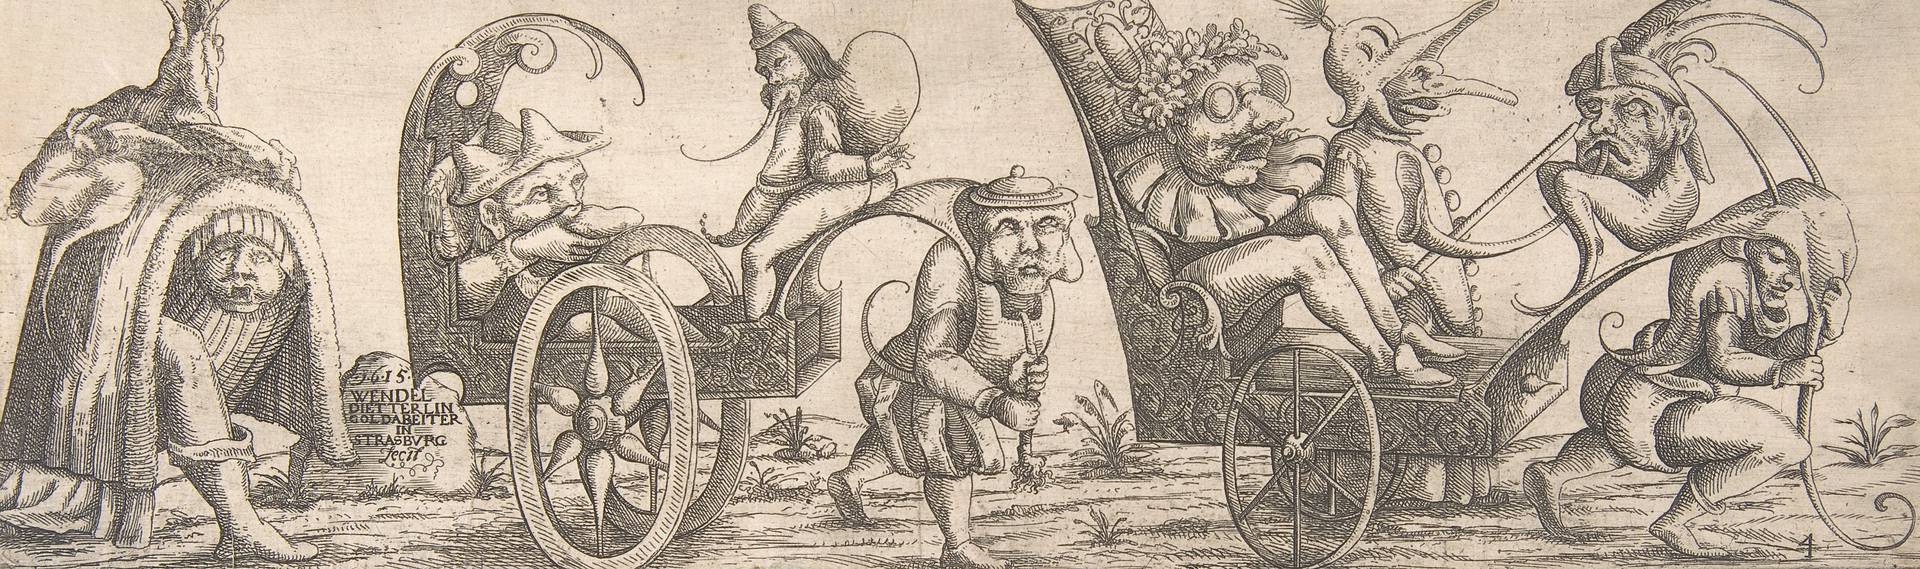 Вендель Диттерлин Младший. Шествие безобразных фигур. 1615